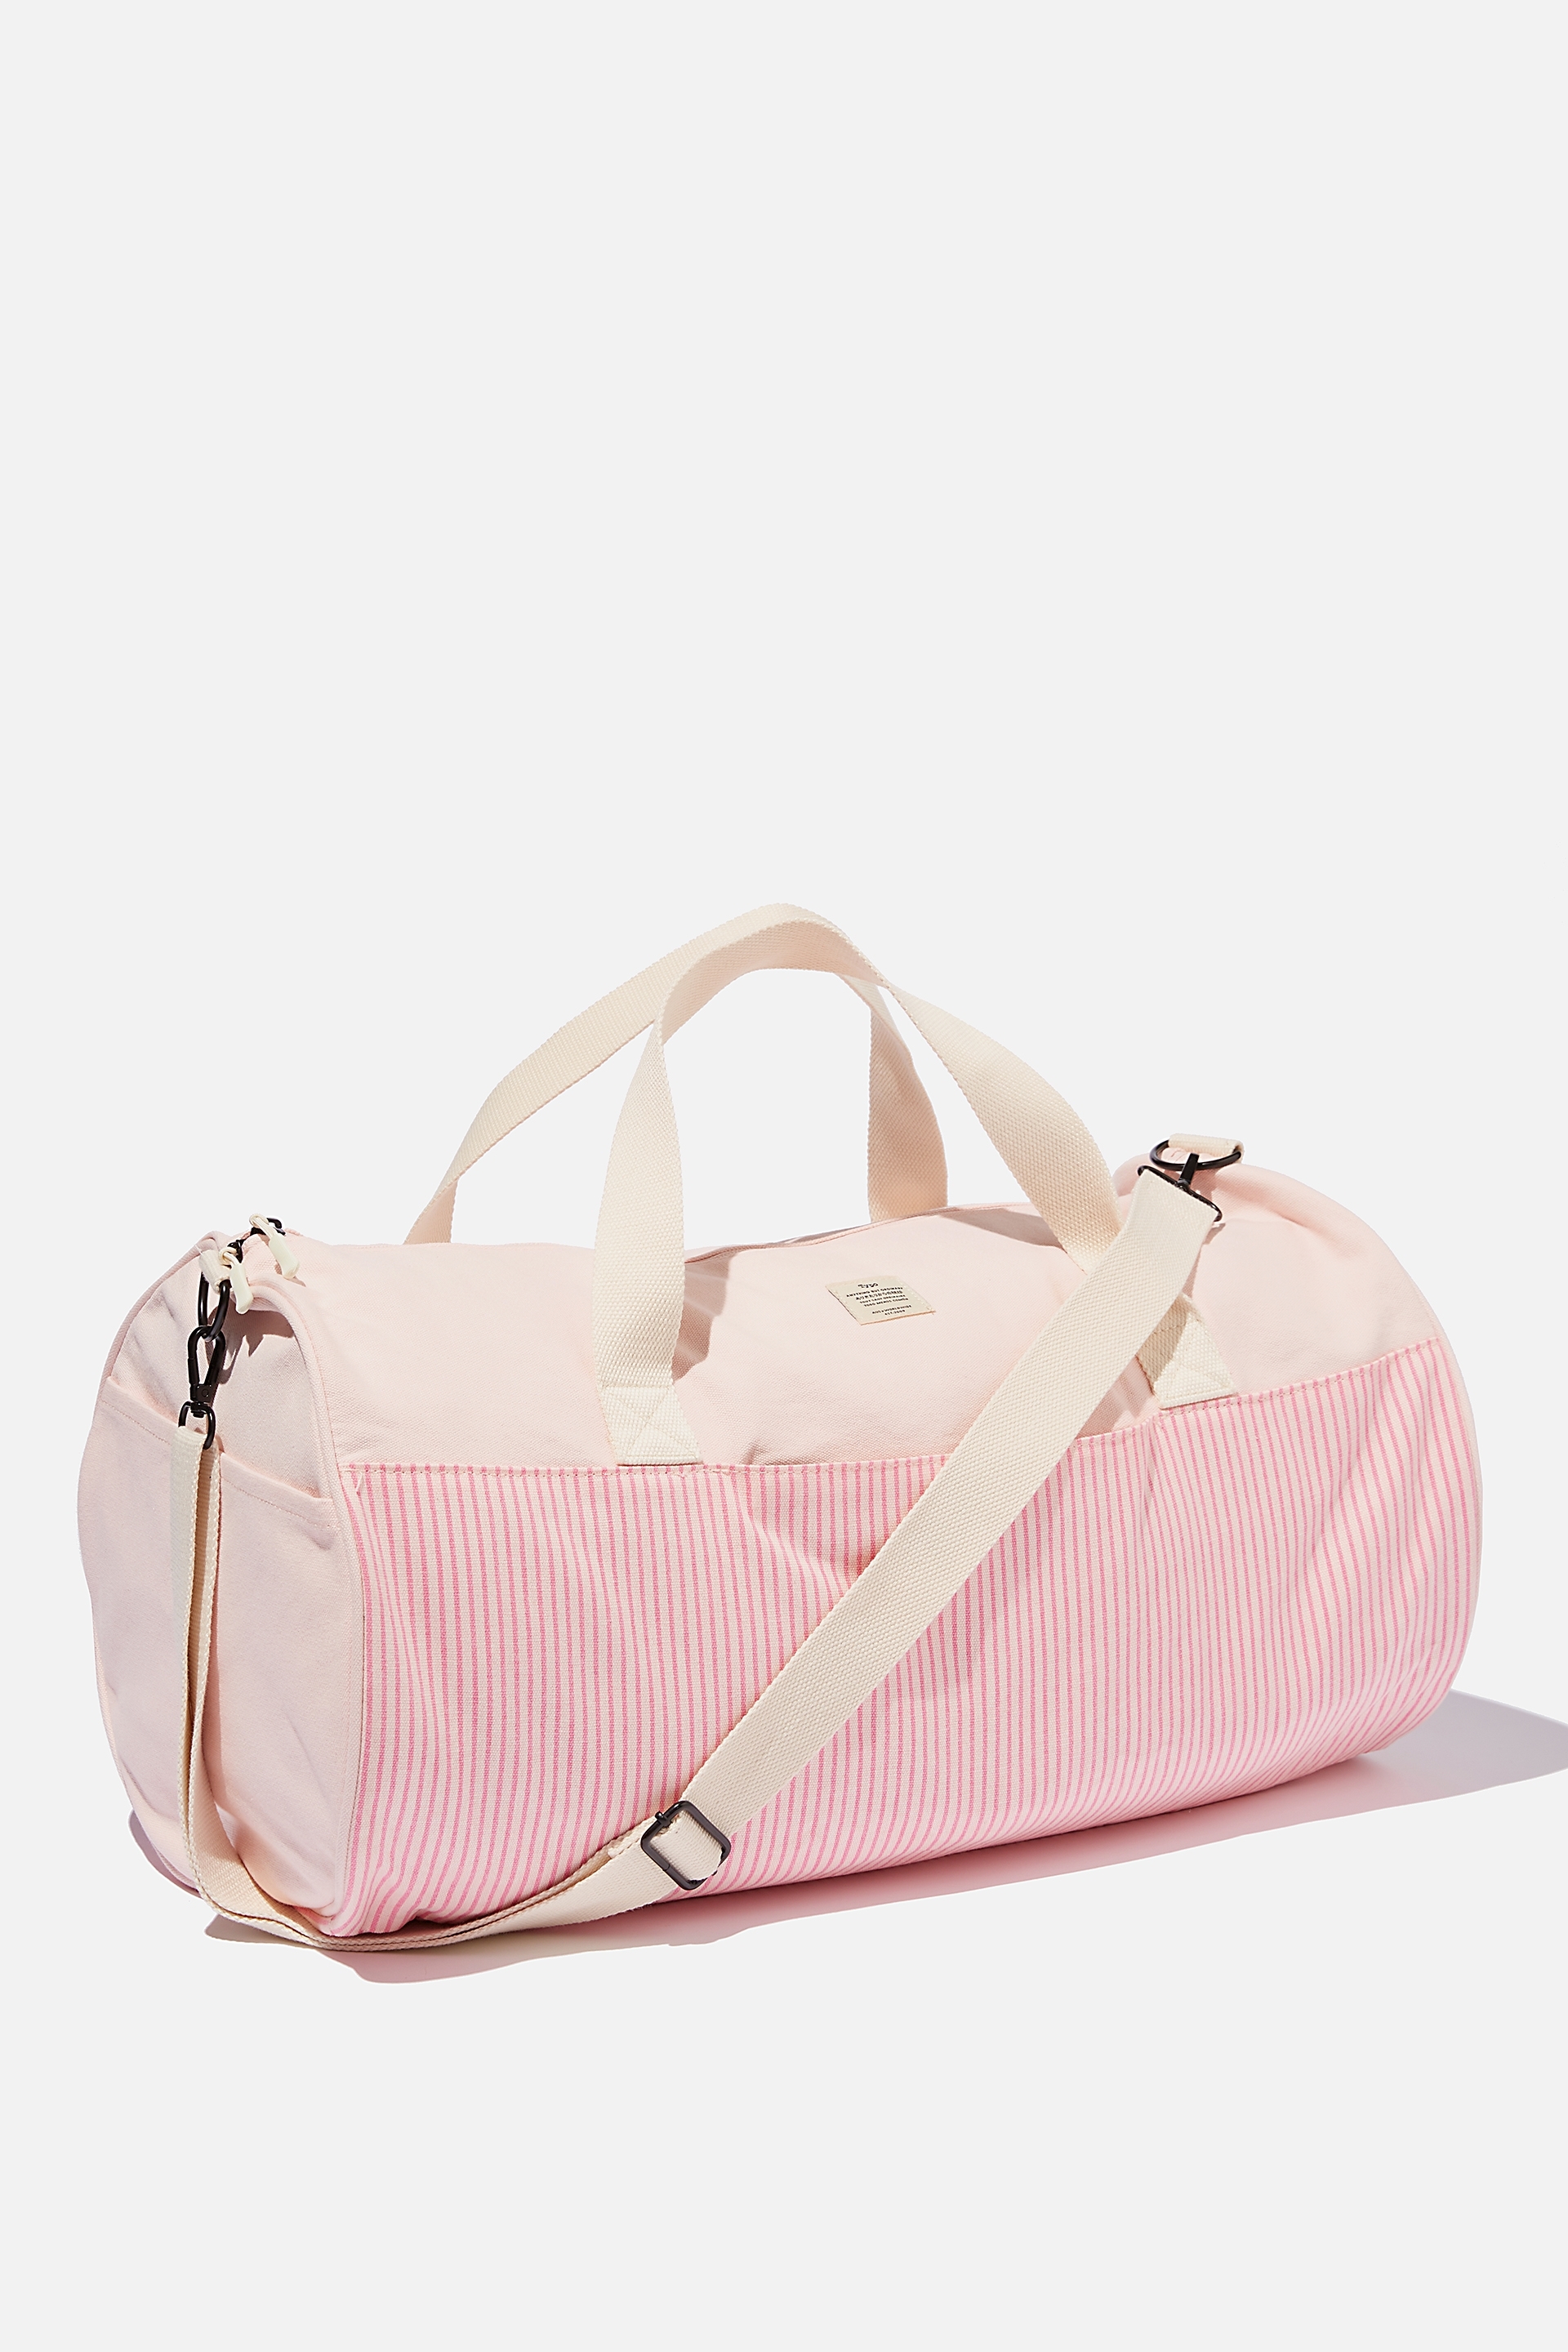 Typo - Weekender Barrel Bag - Parker stripe pink